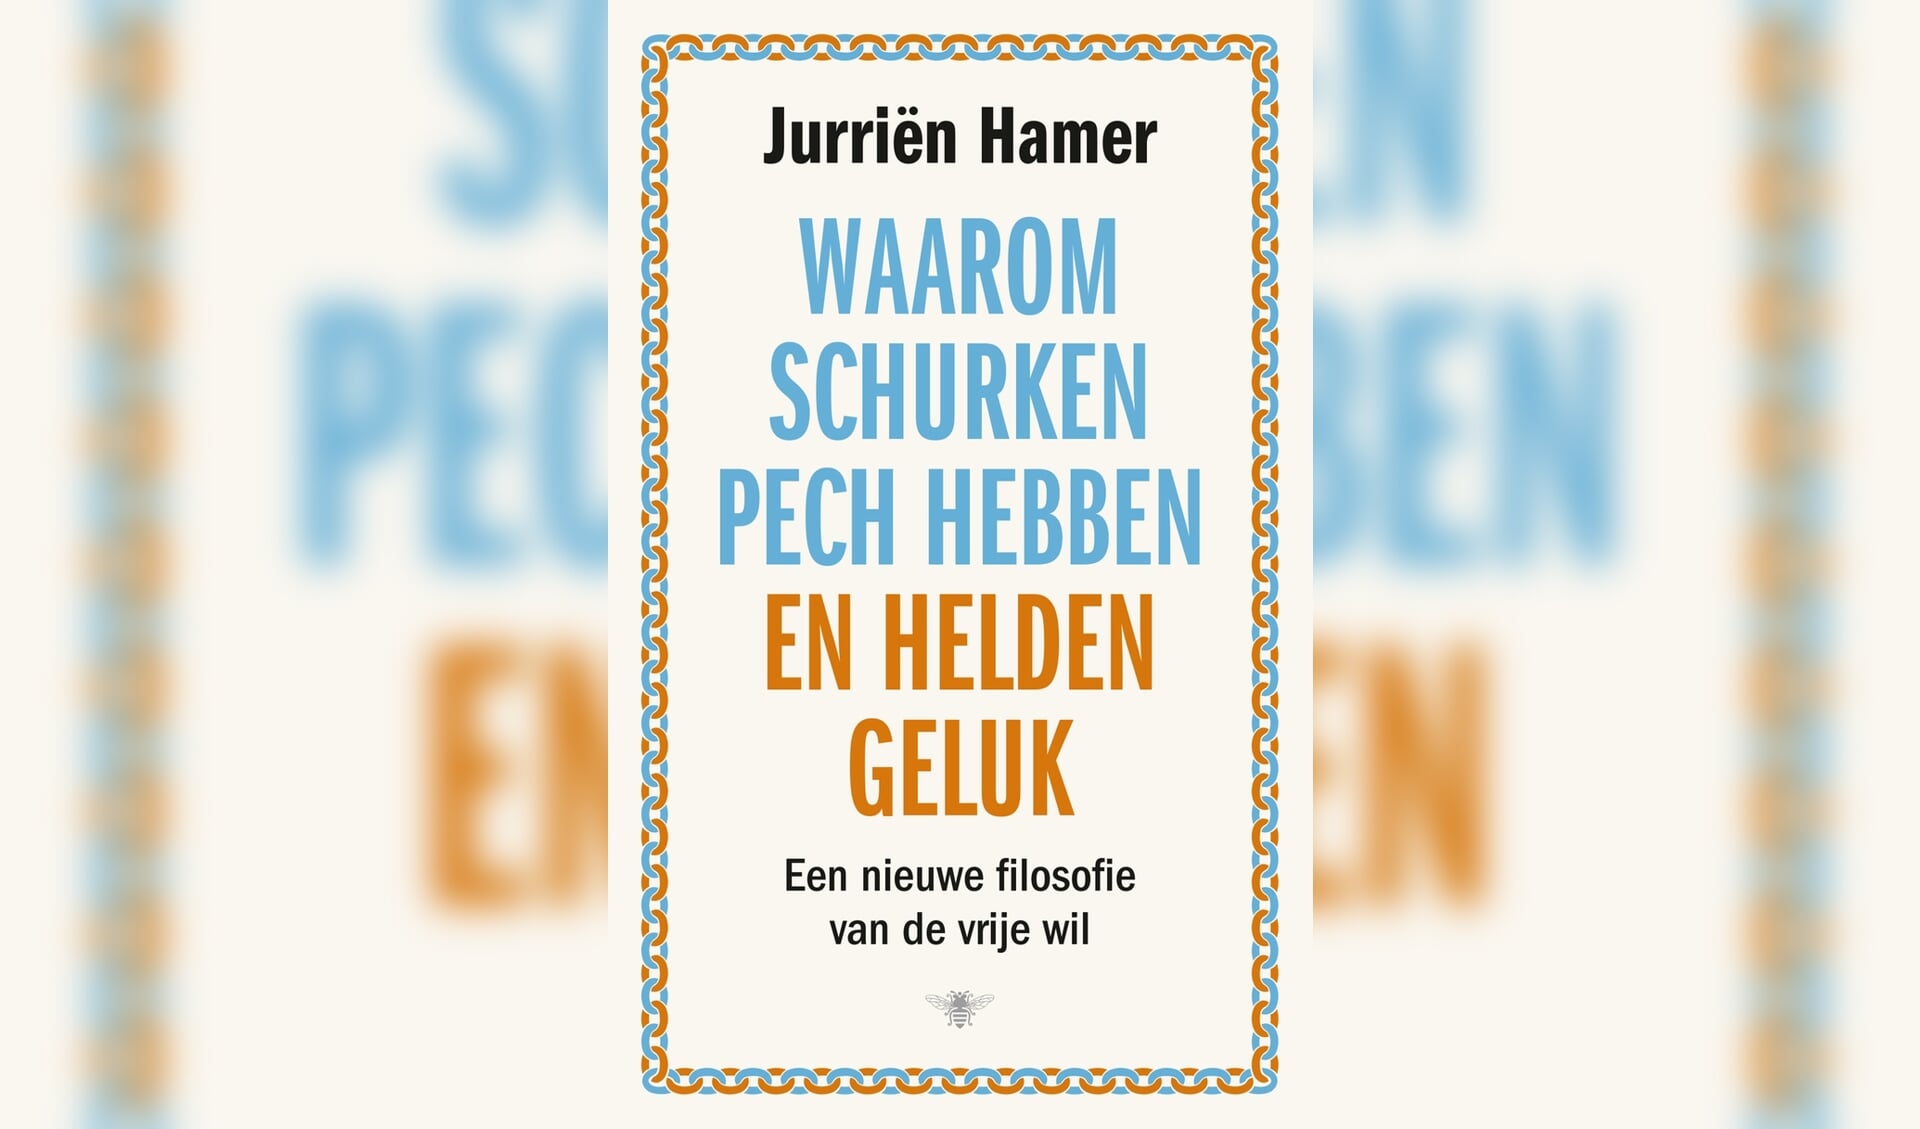 Het debuut van Jurrien Hamer.